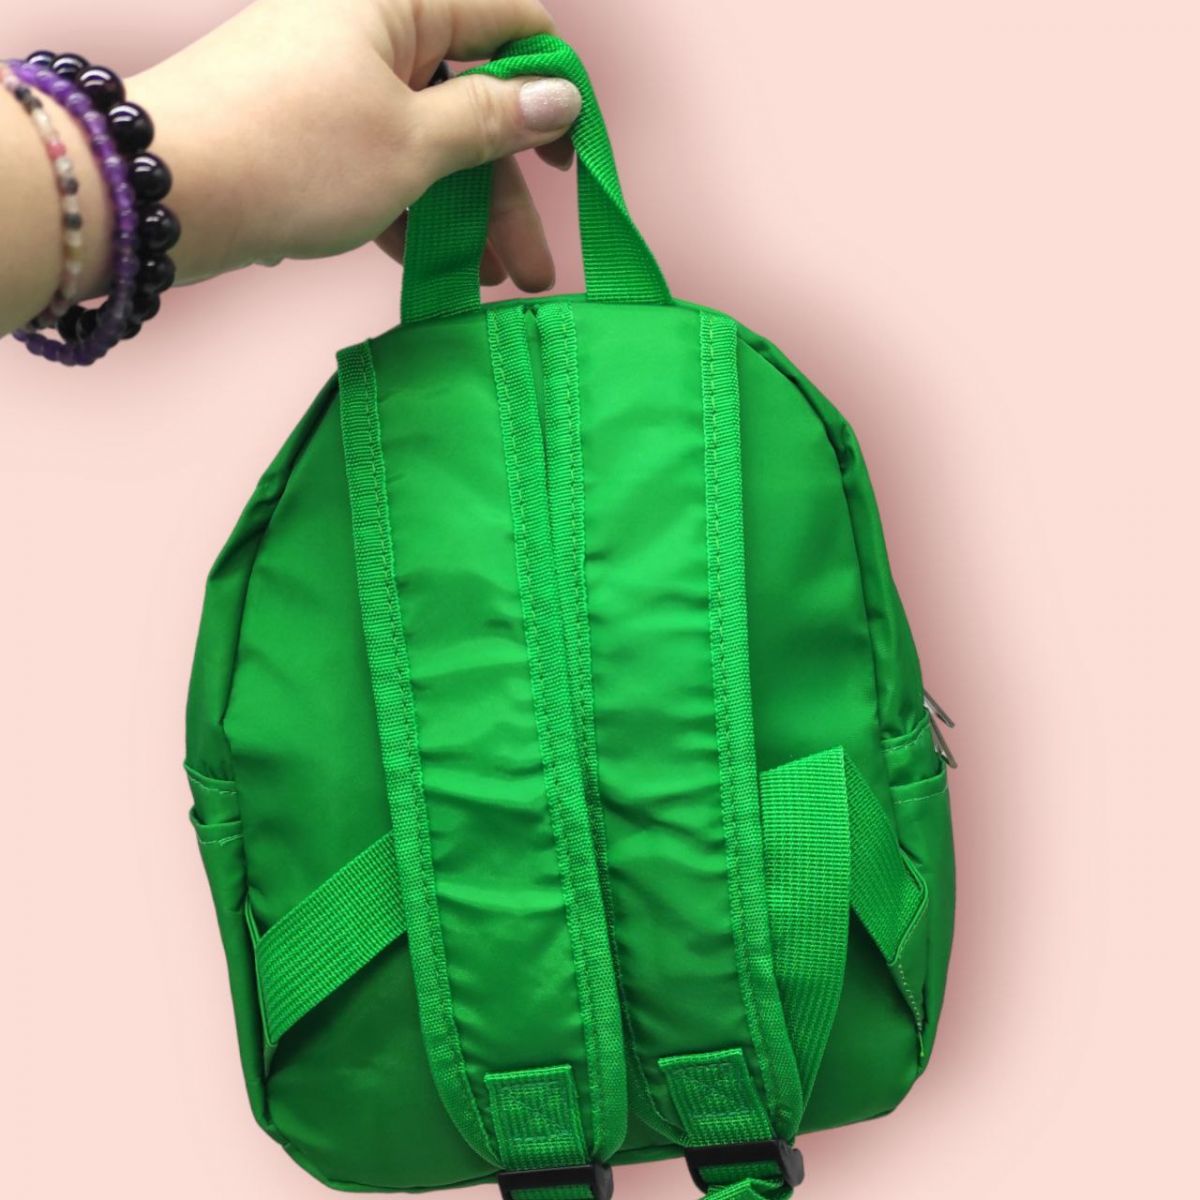 Детский рюкзак "Динозаврики", зеленый